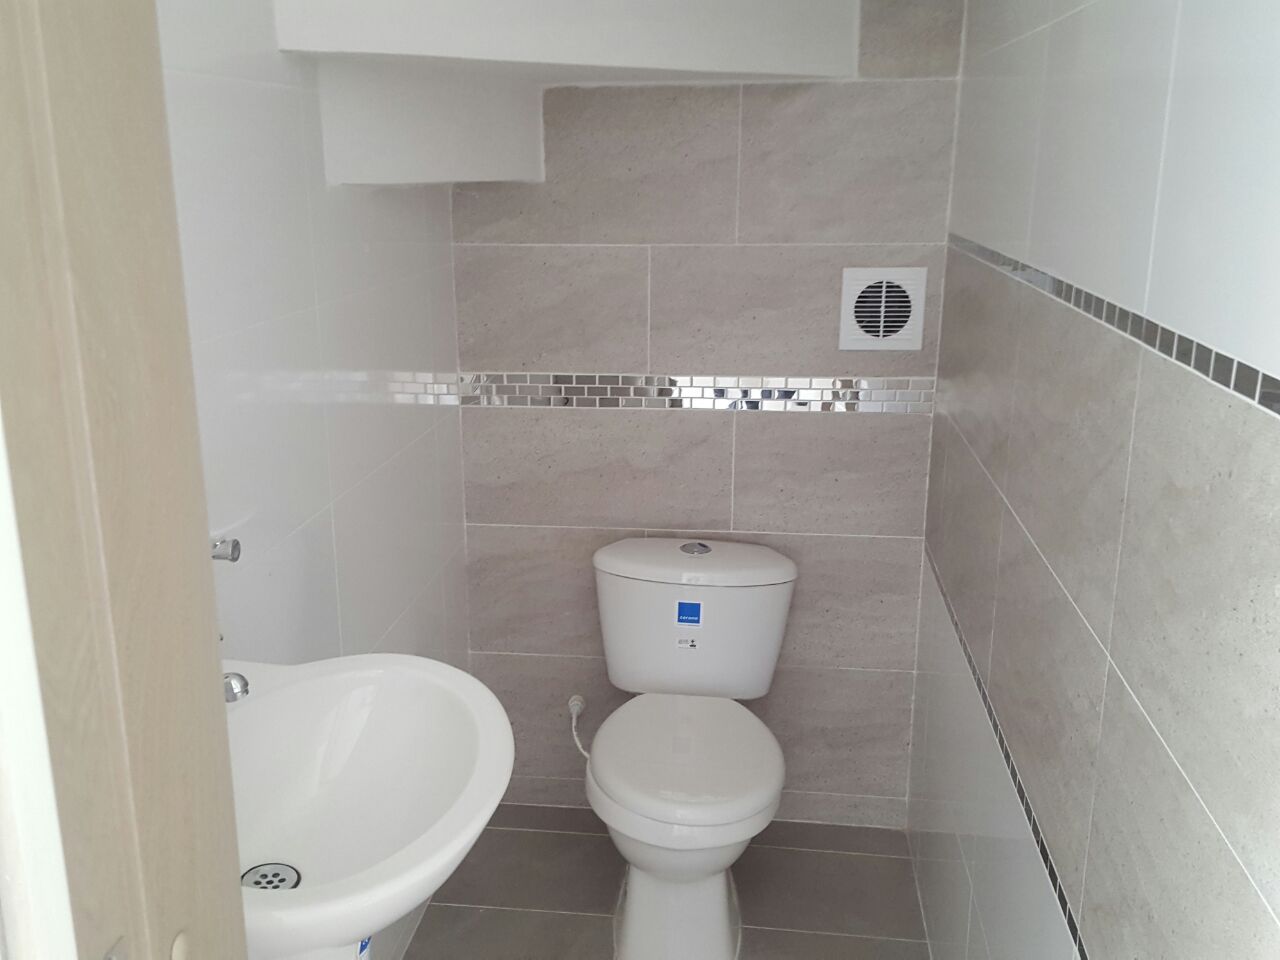 Cuarto de baño simple y moderno con azulejos de mármol blanco acabado de  madera inodoro y ducha